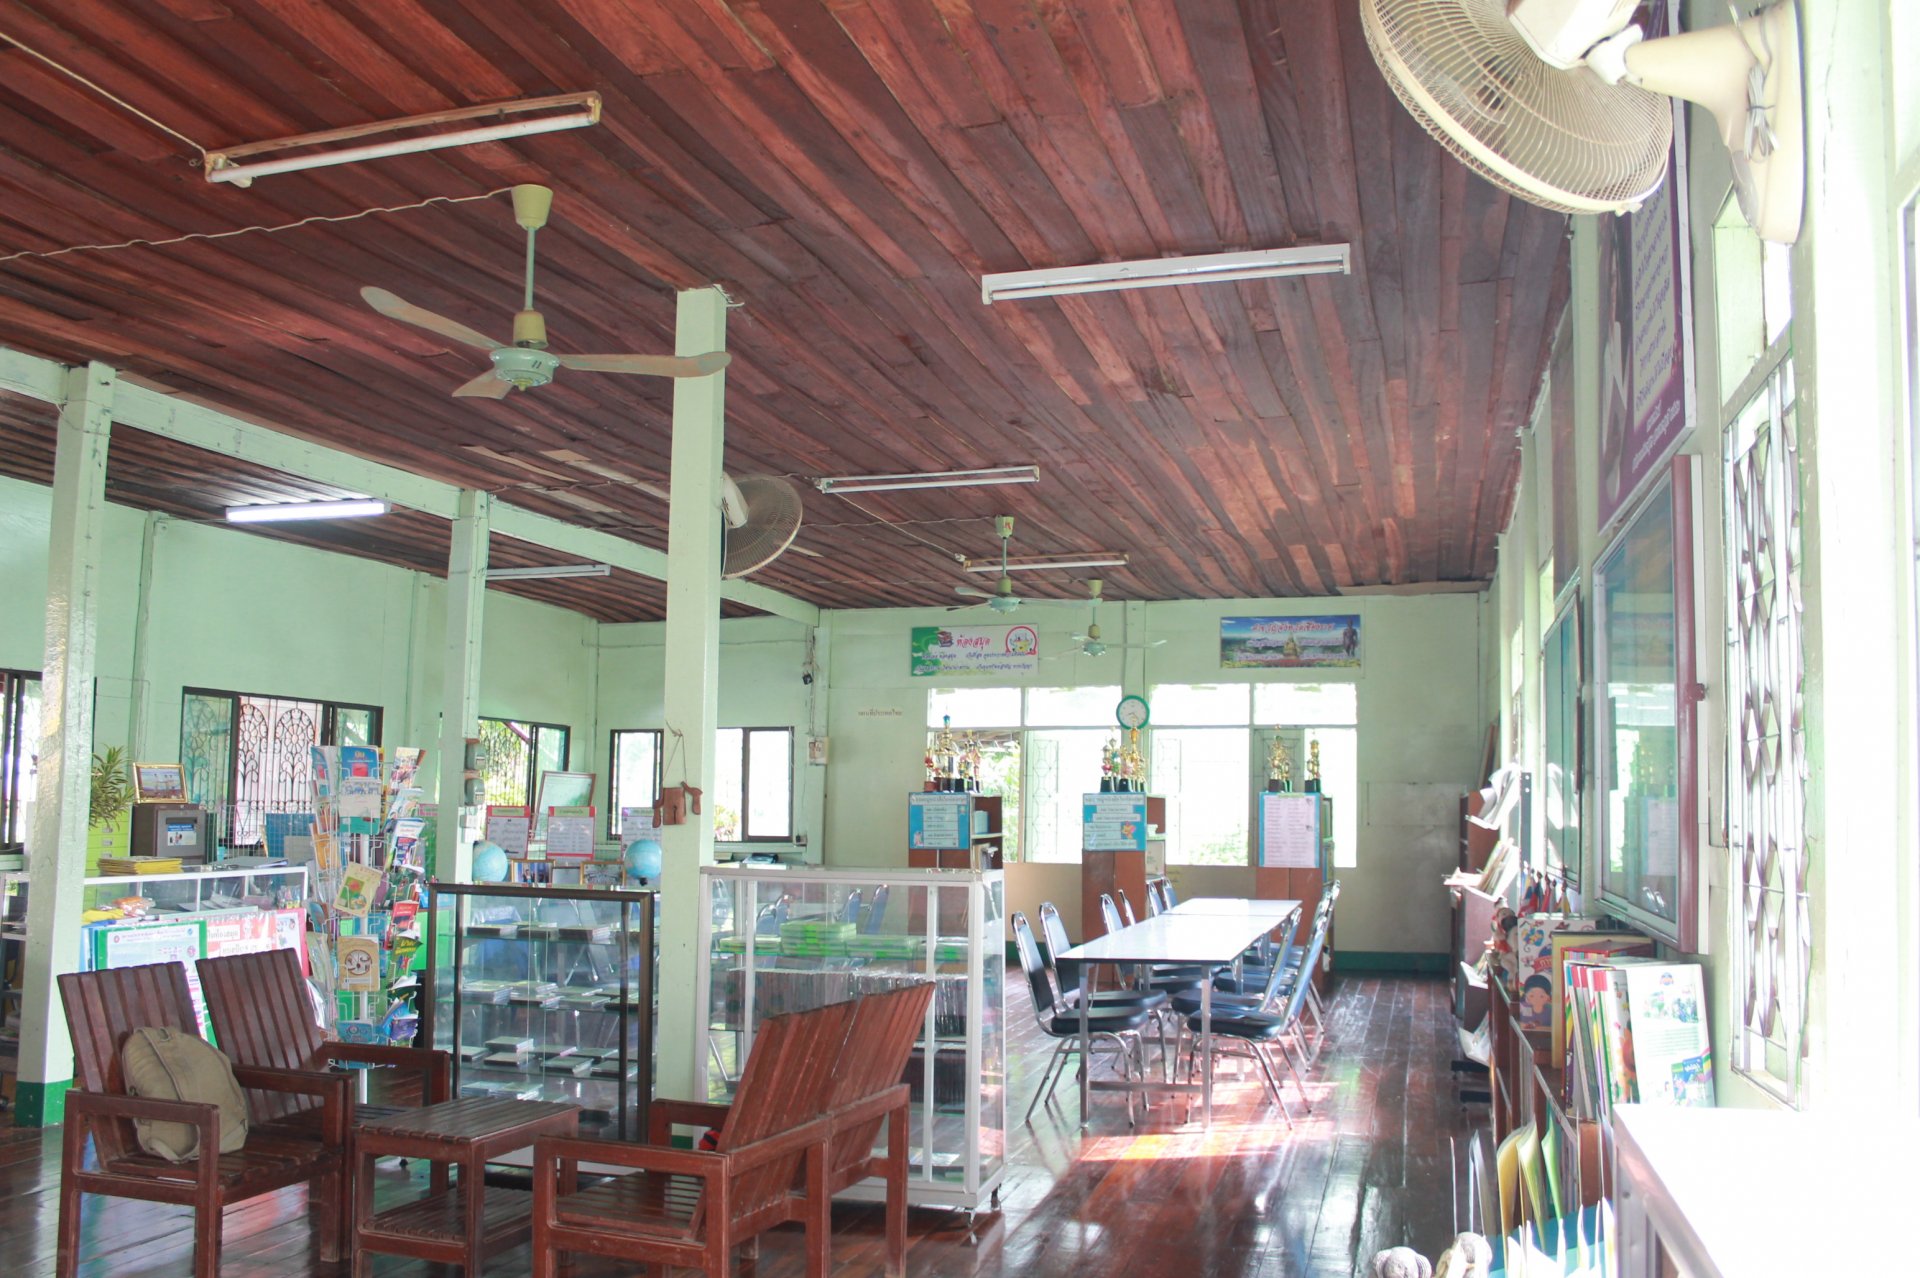 มอบห้องสมุดกรีนวิงให้โรงเรียนโล๊ะป่าห้า อ.เมือง จ.เชียงราย วันที่ 26 ก.ค. 2556